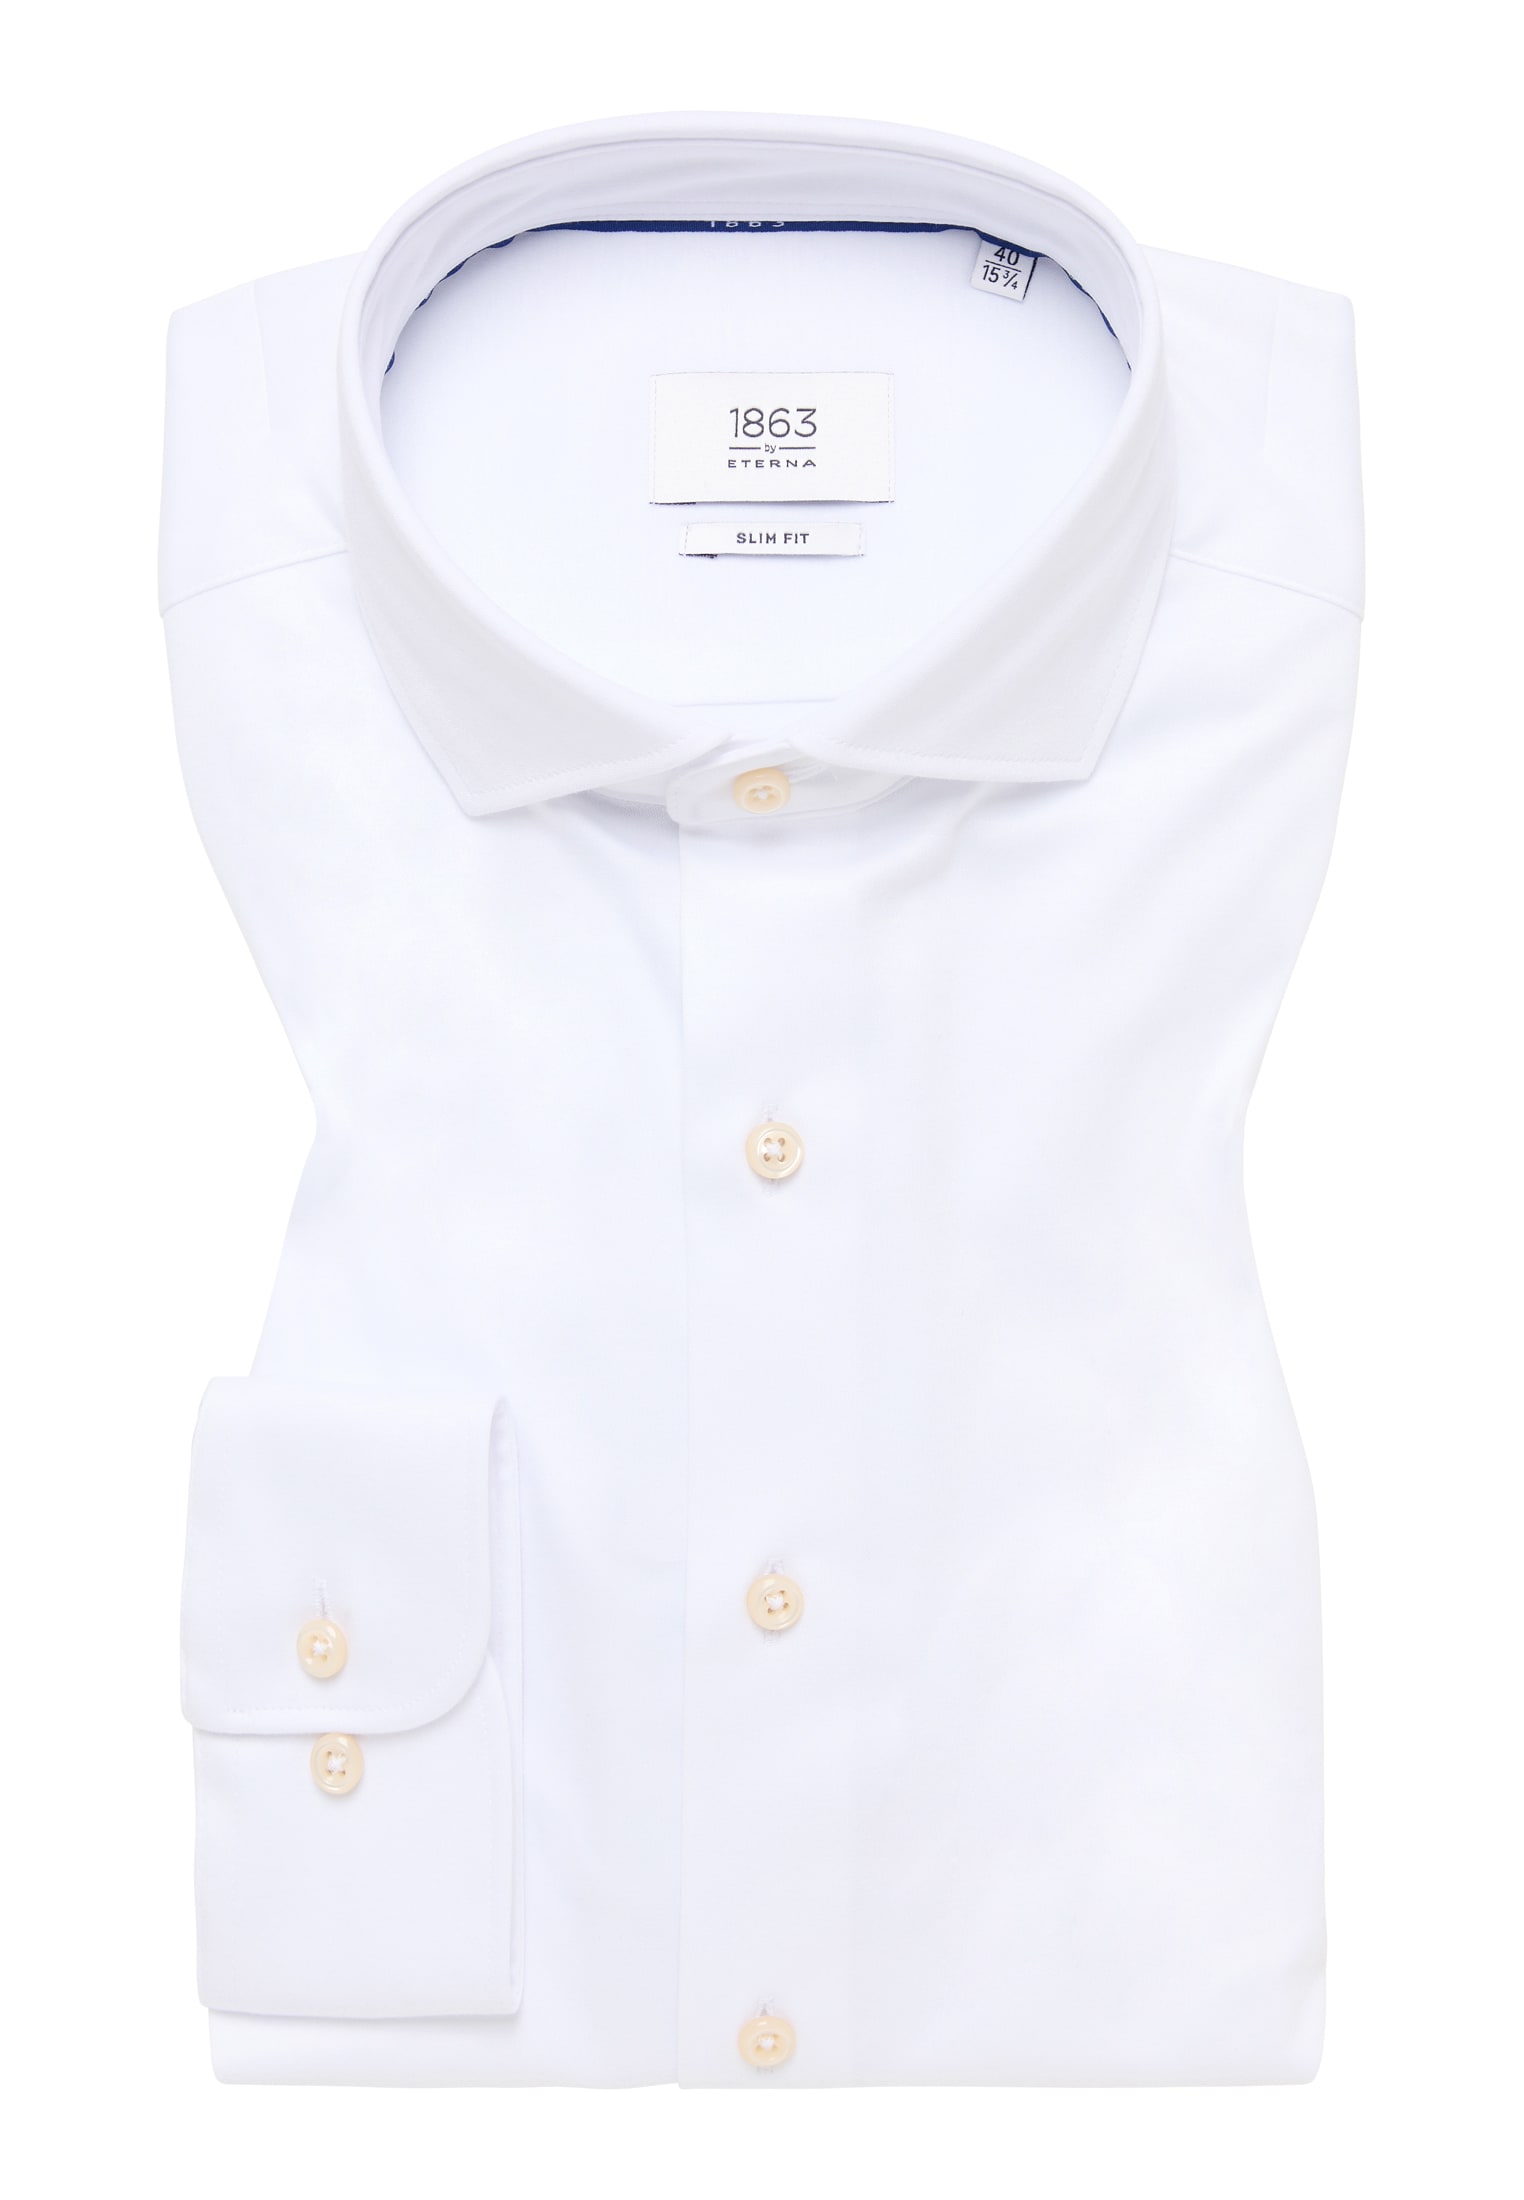 SLIM FIT Jersey Langarm in 1SH00378-00-01-40-1/1 Shirt 40 unifarben weiß weiß | | | 